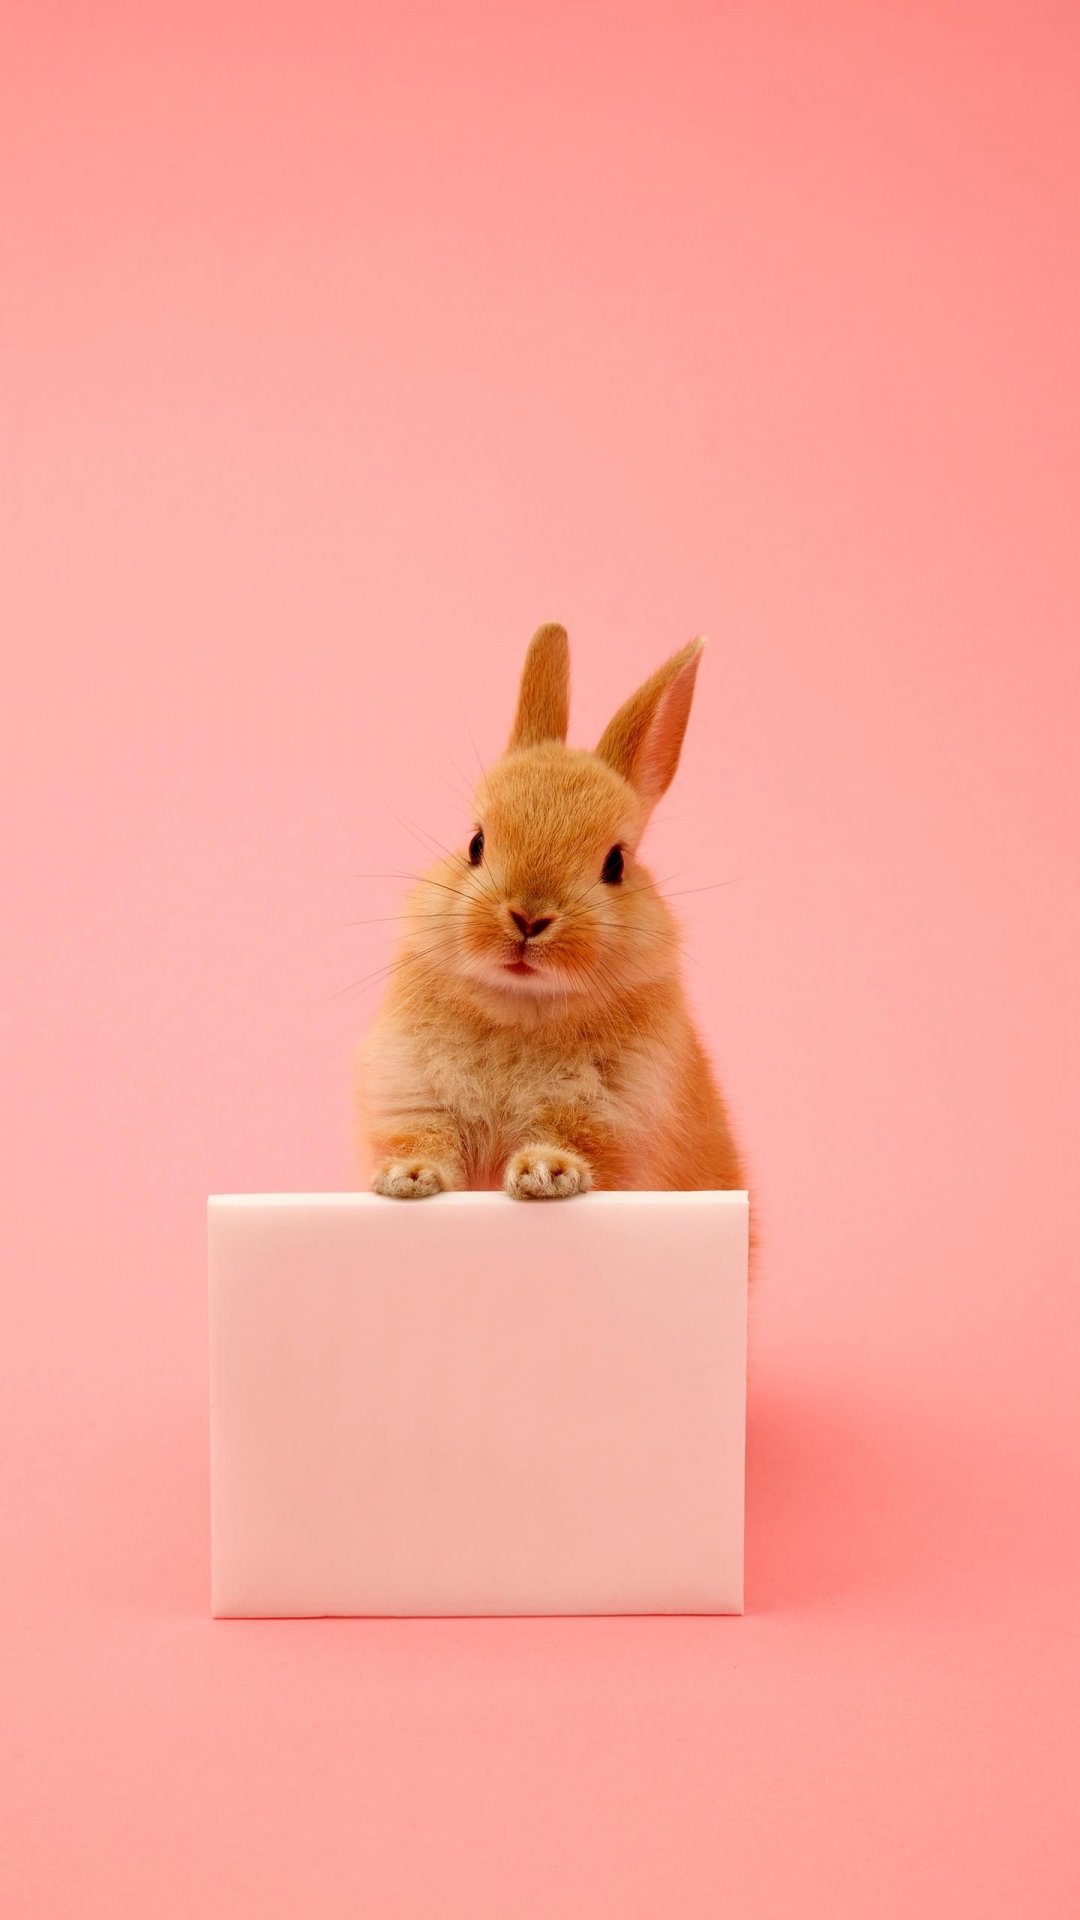 伶俐可爱小兔子,高清图片,手机壁纸